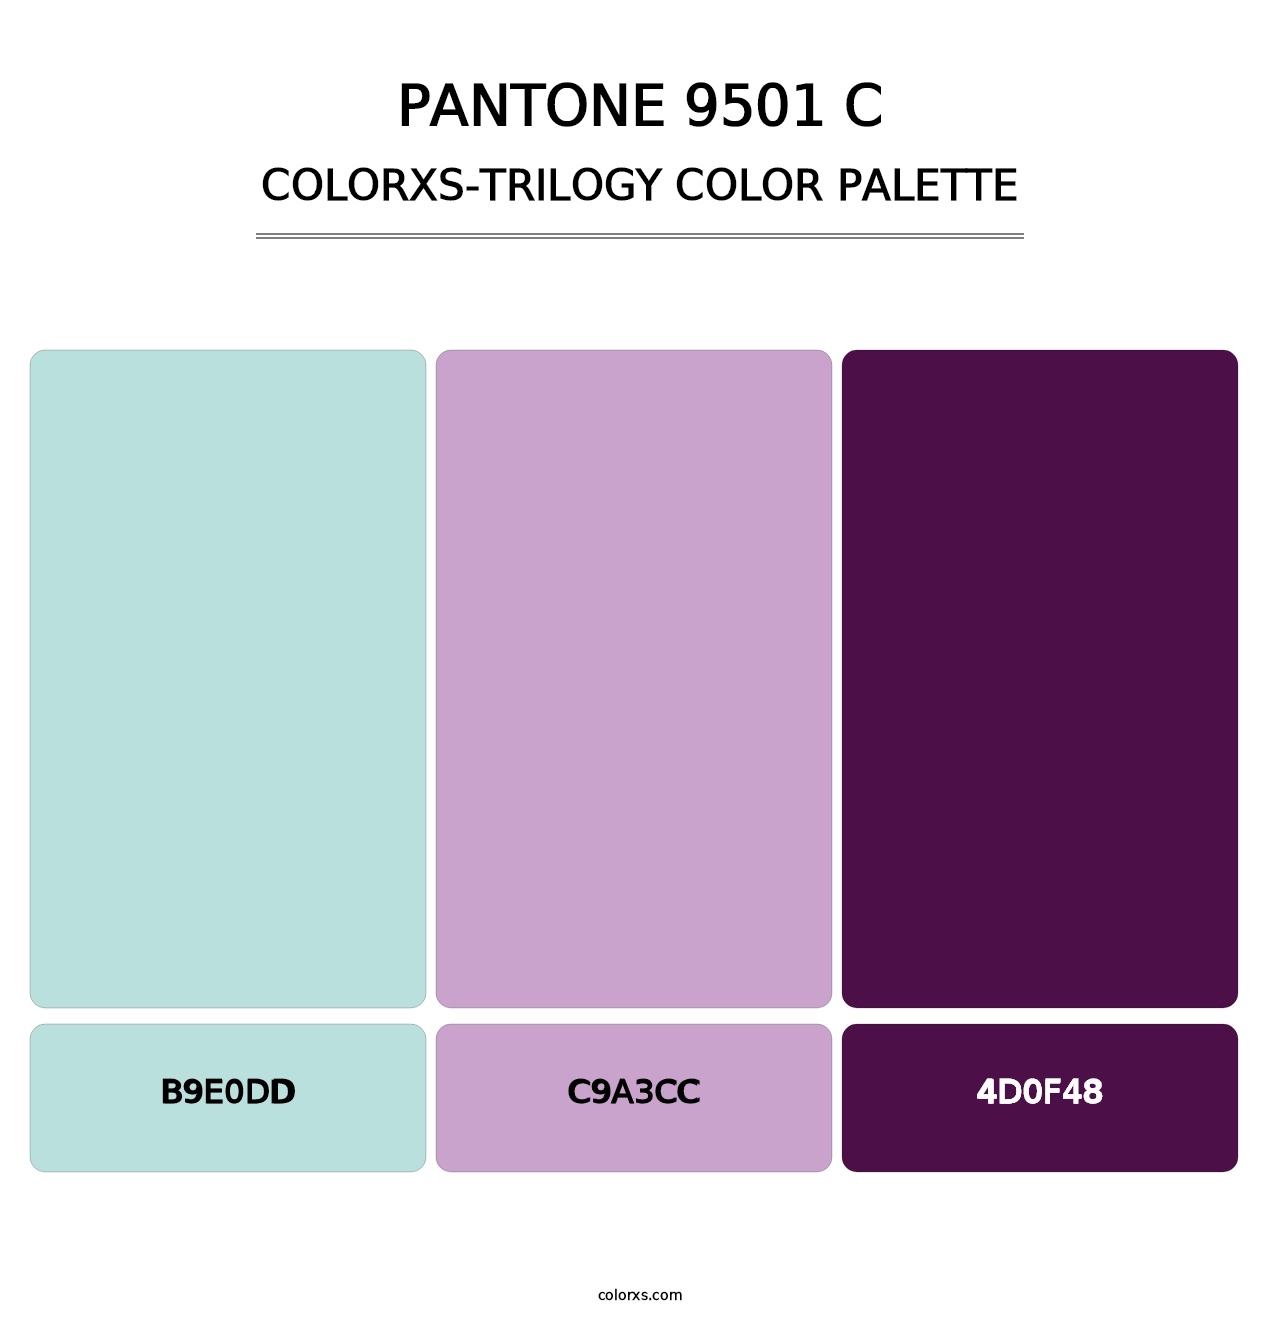 PANTONE 9501 C - Colorxs Trilogy Palette